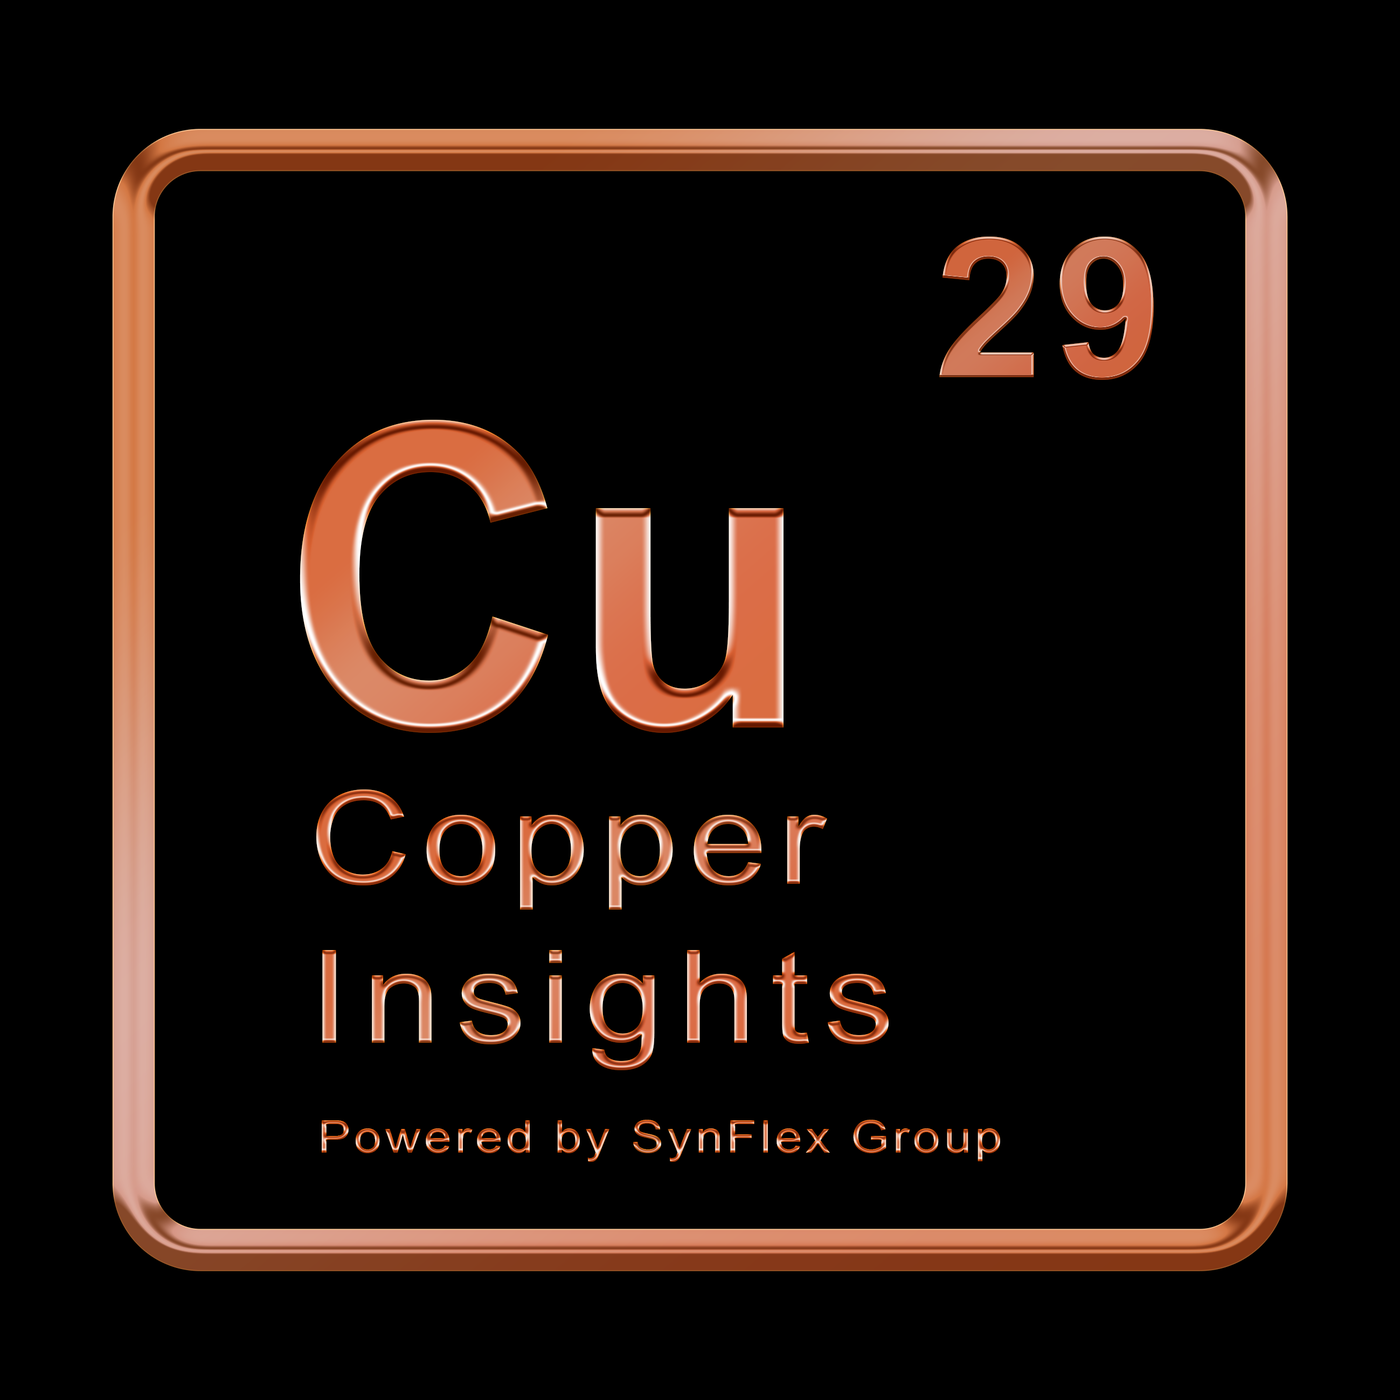 Bernard Respaut - CEO European Copper Institute